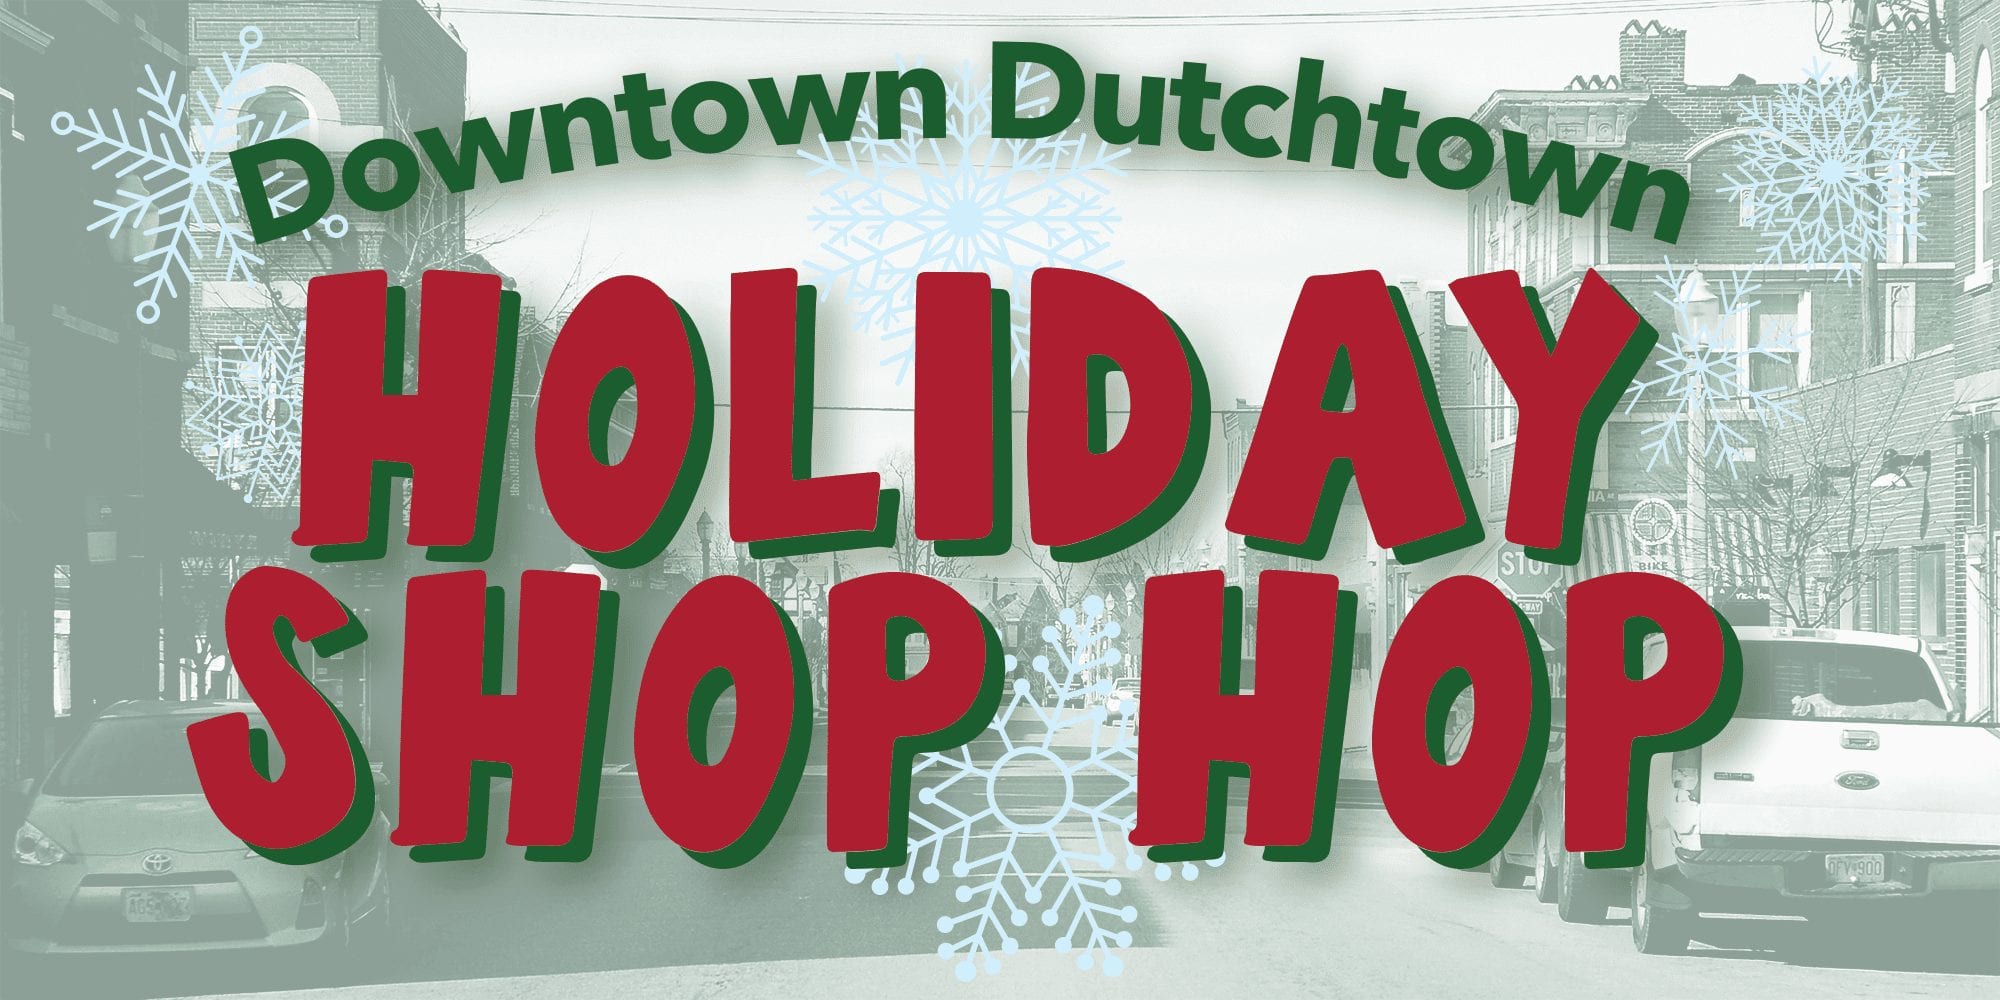 Dowtown Holt Shop Hop Hop